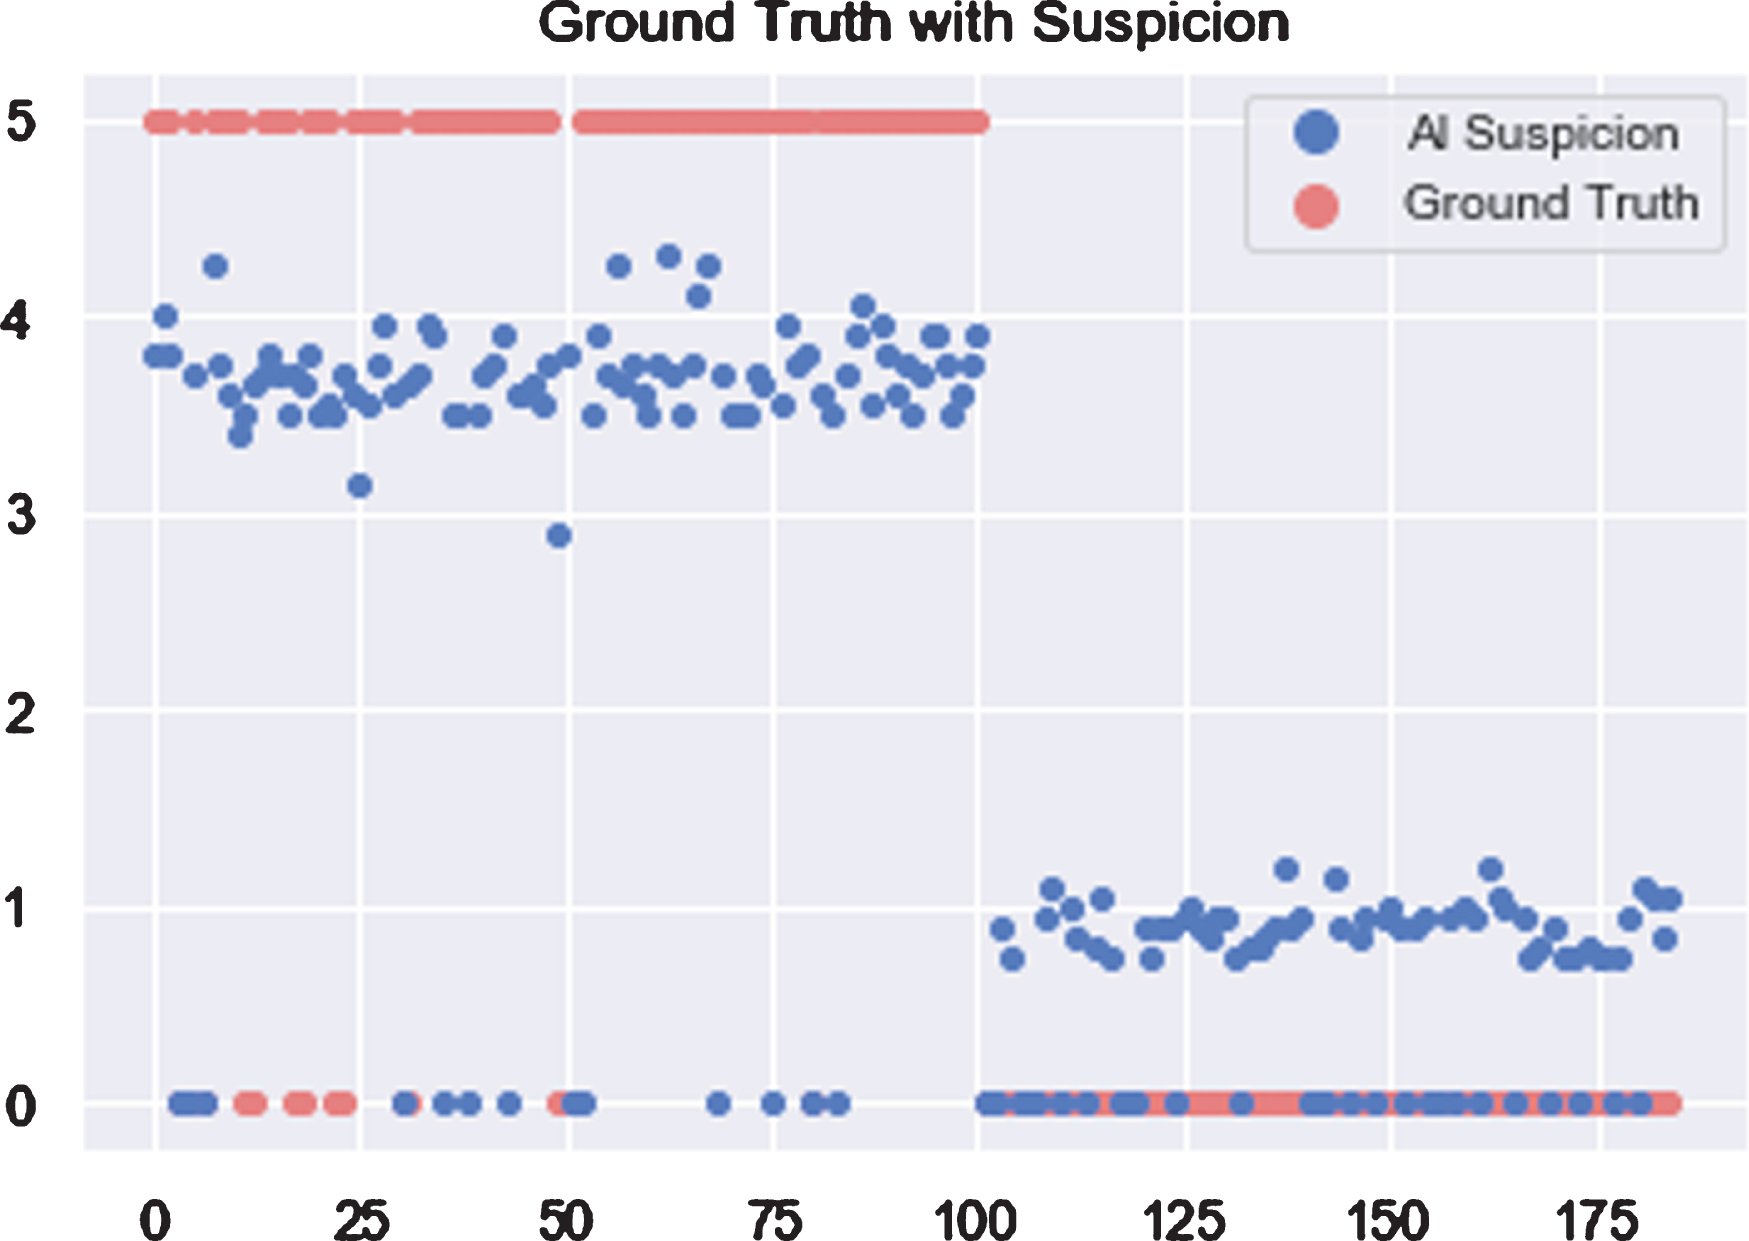 Scores of COVID-19 suspicion for each patient when using AI.